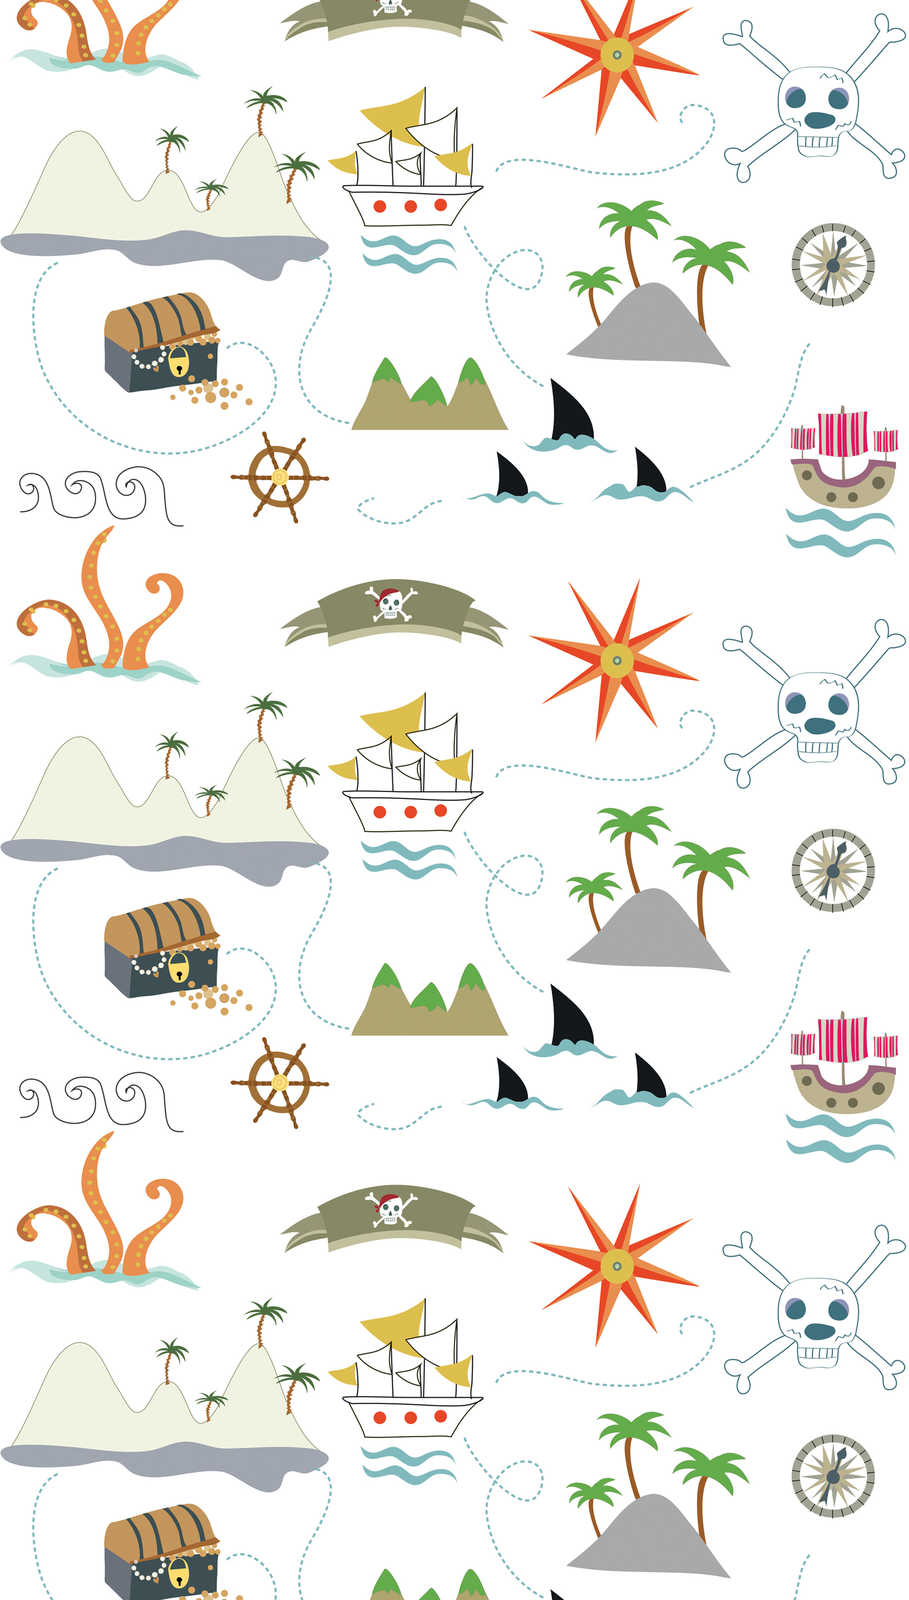             Kindervliesbehang met piratensymbolen - kleurrijk, crème, grijs
        